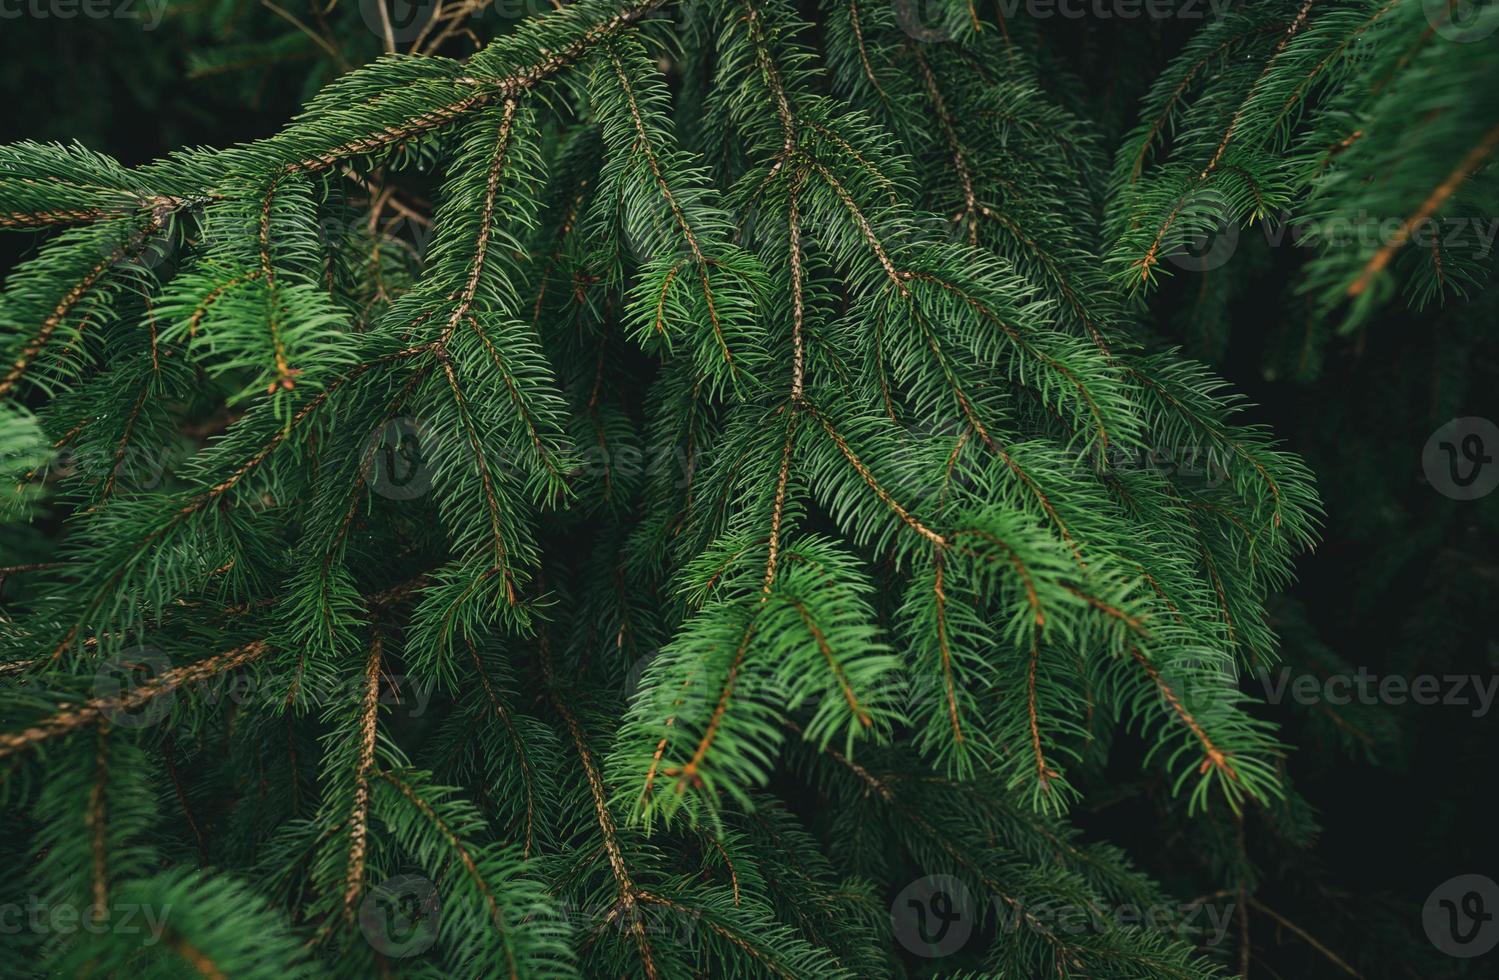 groene pijnboombladeren en takken op donkere achtergrond in het bos. natuur abstracte achtergrond. groene naald dennenboom. kerst dennenboom behang. dennenboom tak. mooi patroon van dennentakje foto